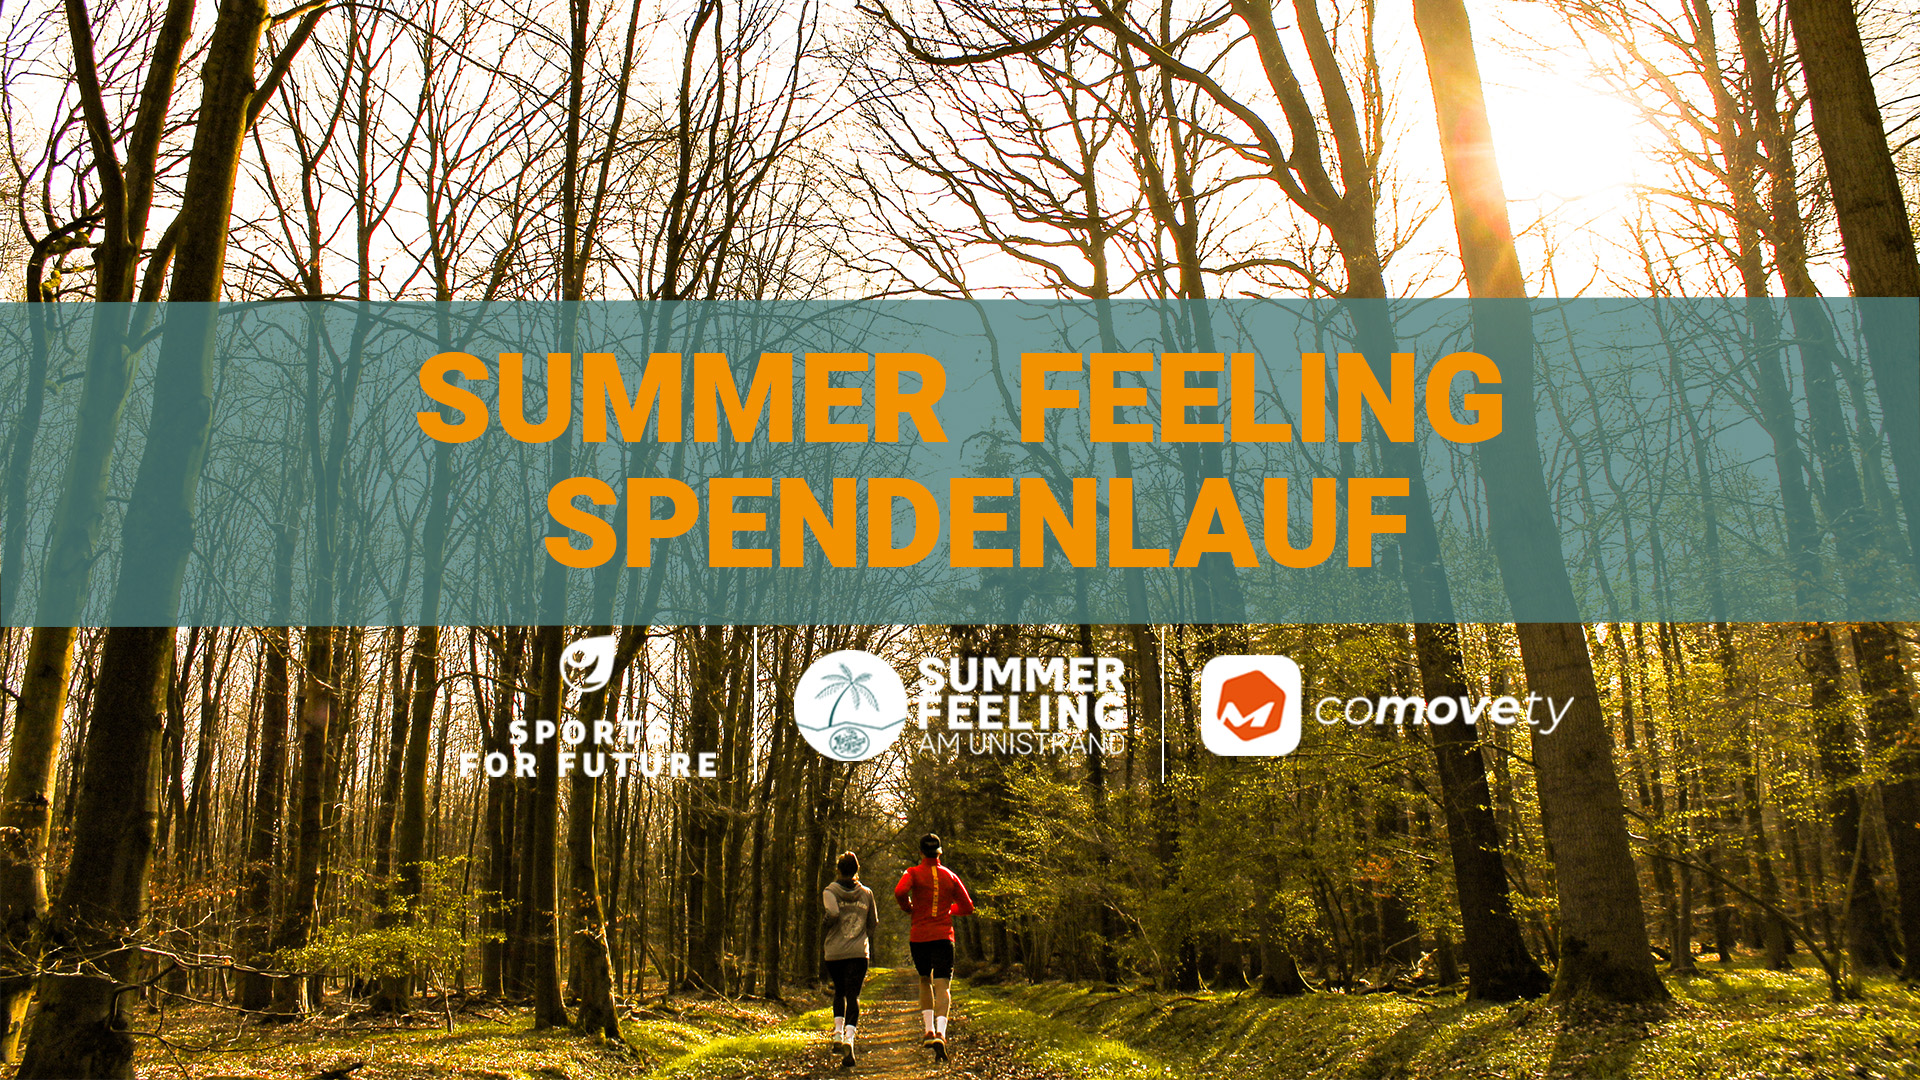 Schriftzug "Summer Feeling am Unistrand", darunter die Logos von Sports for Future, dem Summer Feeling am Unistrand und Comovety, im Hintergrund ein Läufer und eine Läuferin im Wald